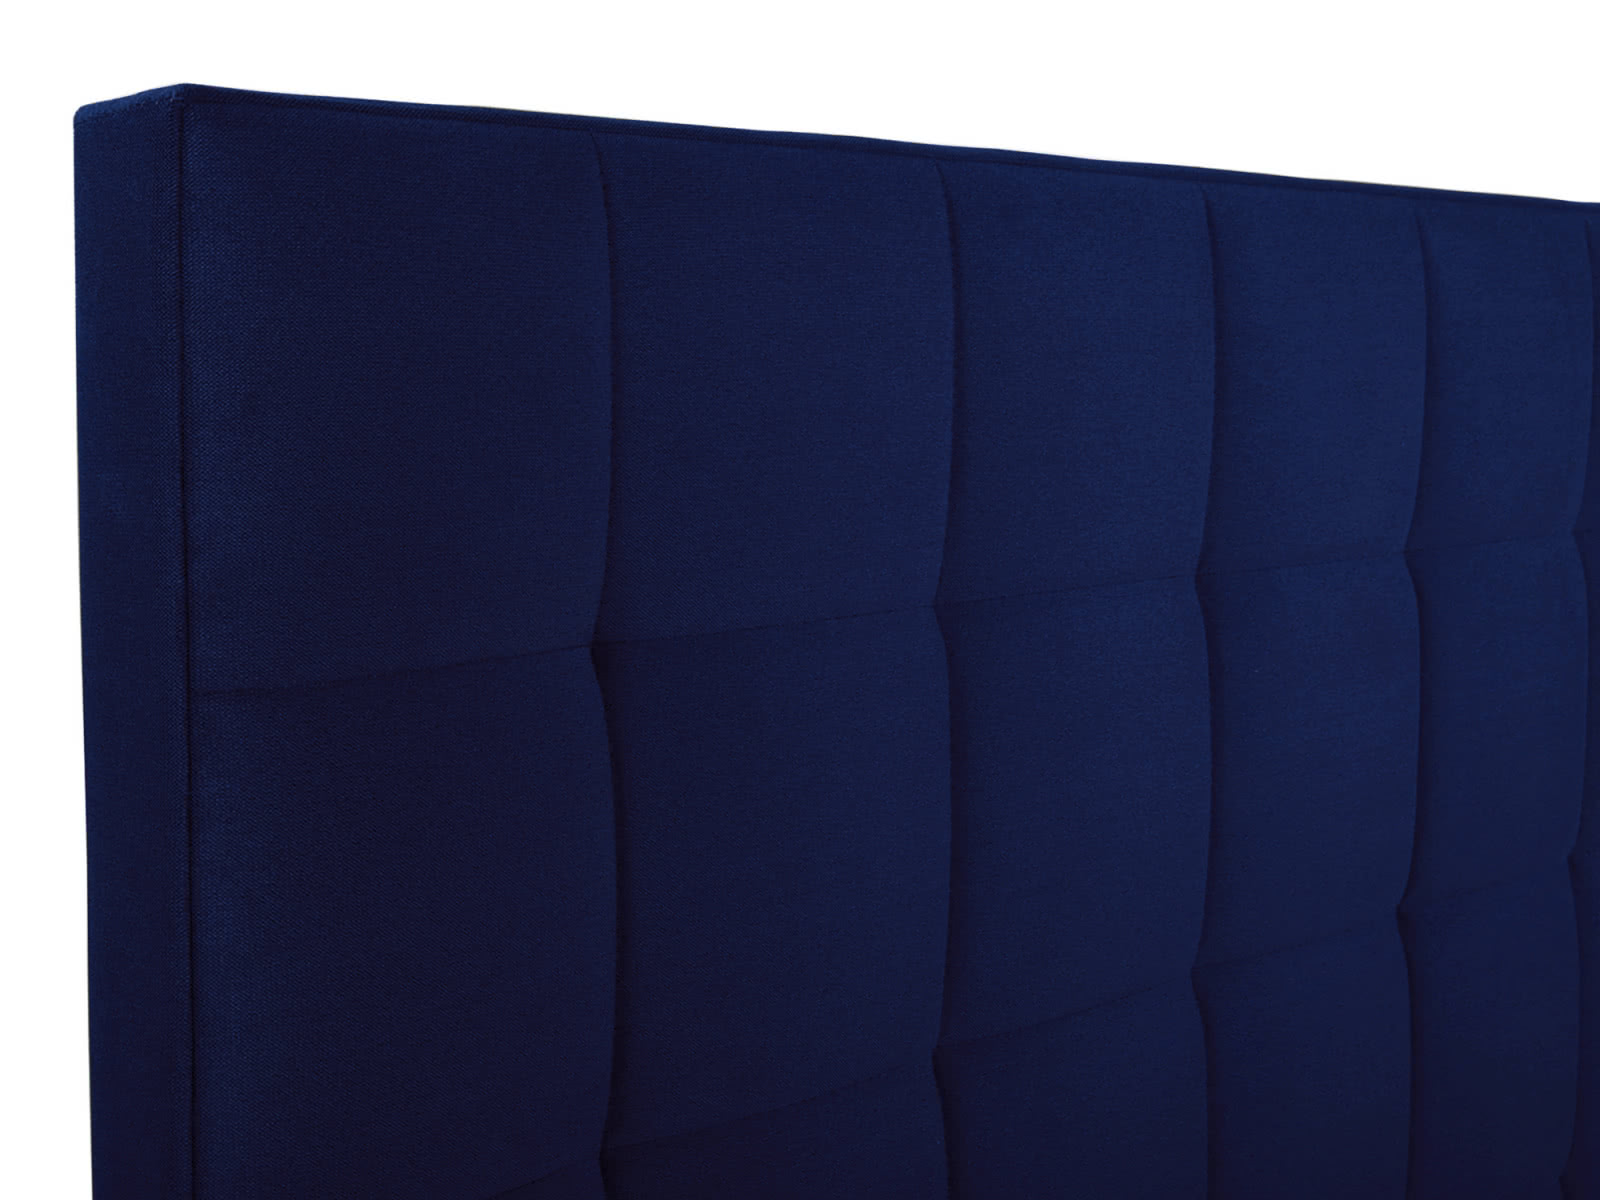 Купить кровать СтолЛайн Кровать СтолЛайн Пассаж 2 180х200 с подъемным механизмом дешево на официальном сайте